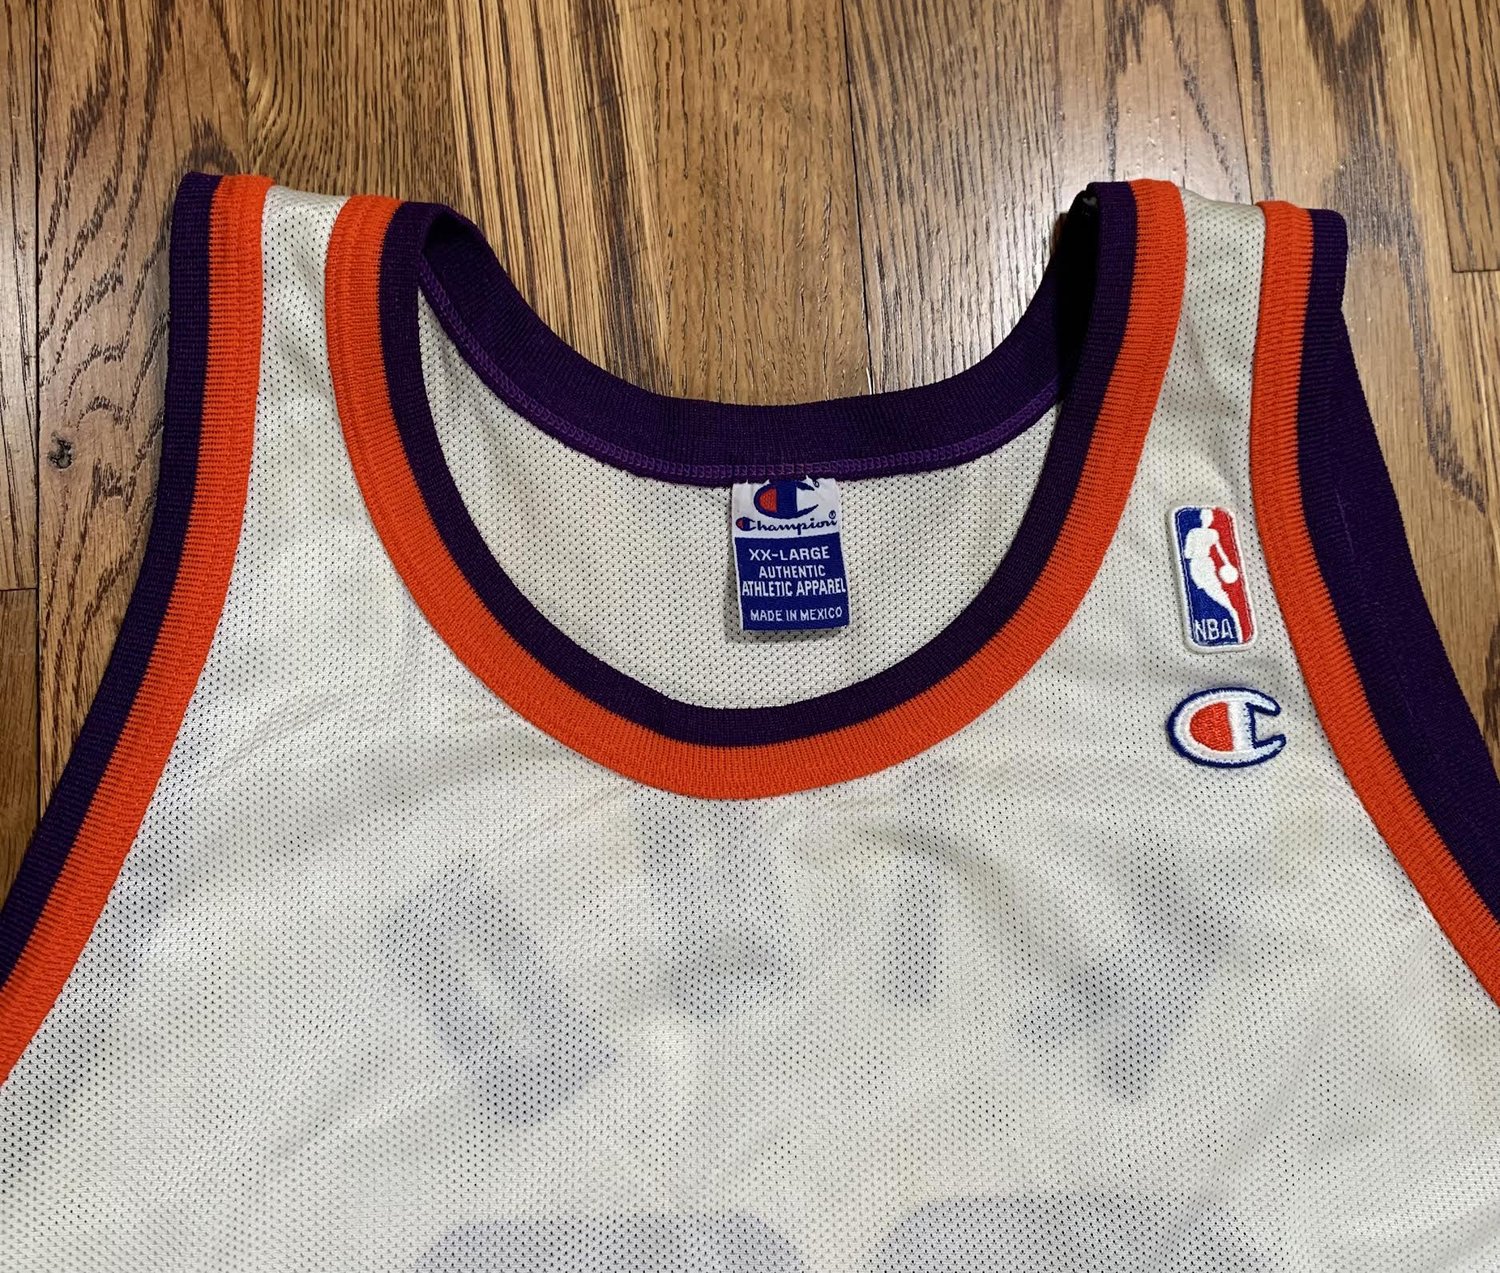 Phoenix Suns Vintage Champions NBA T-Shirt – Basketball Jersey World